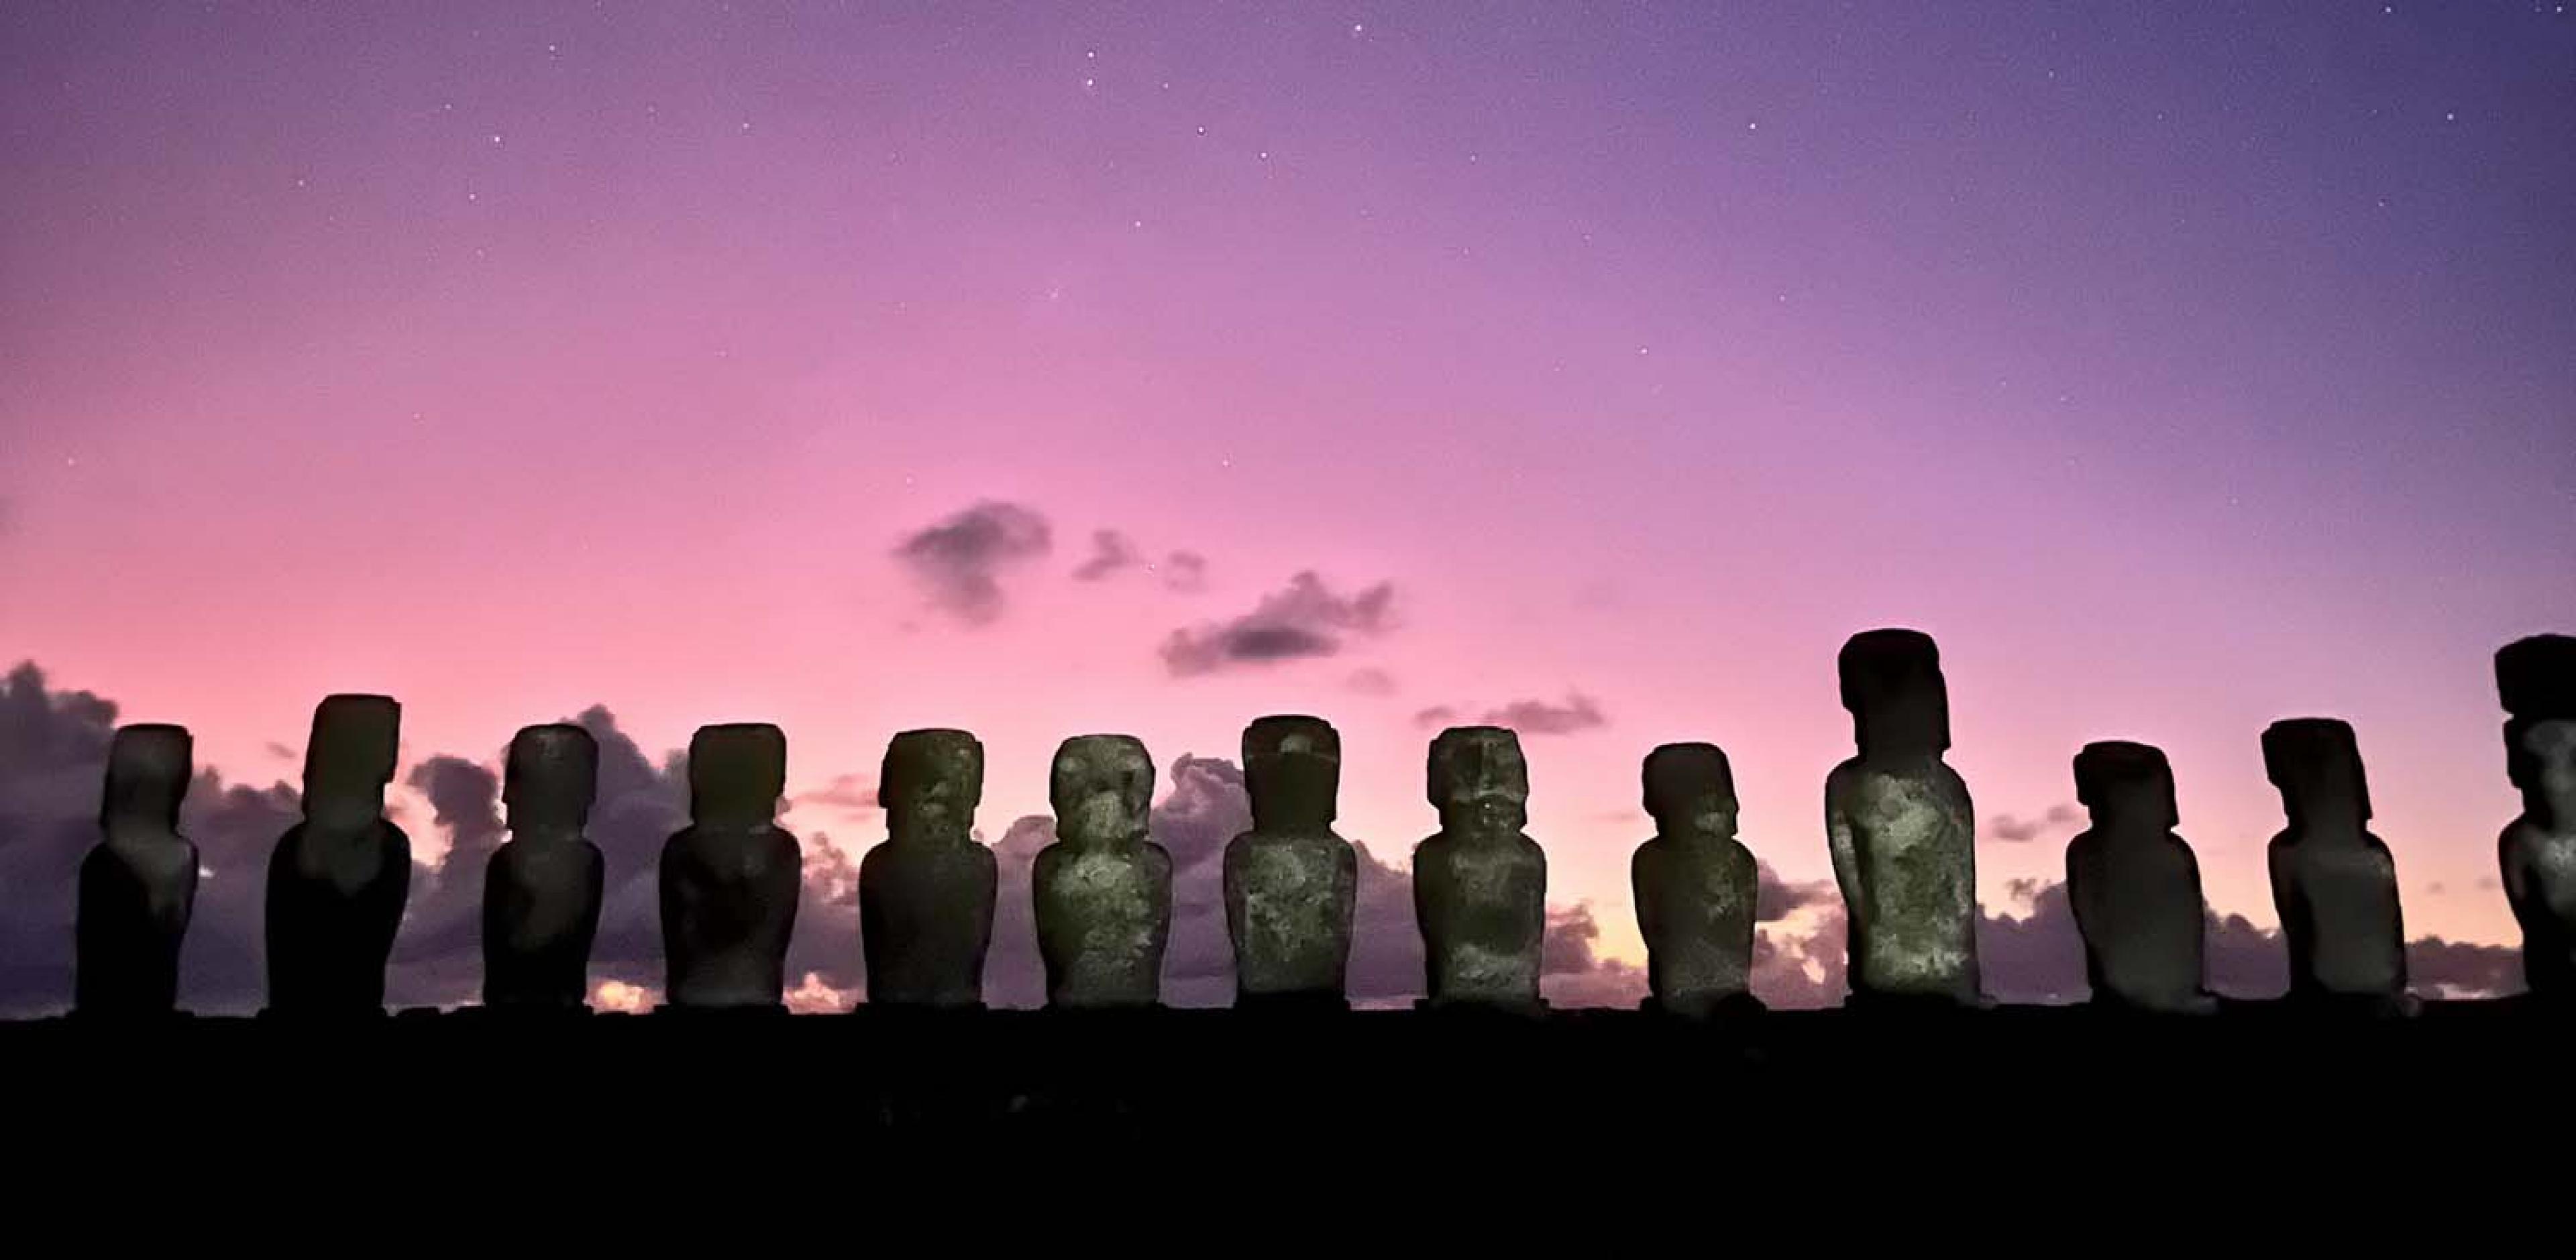 moai on a hill at sunrise